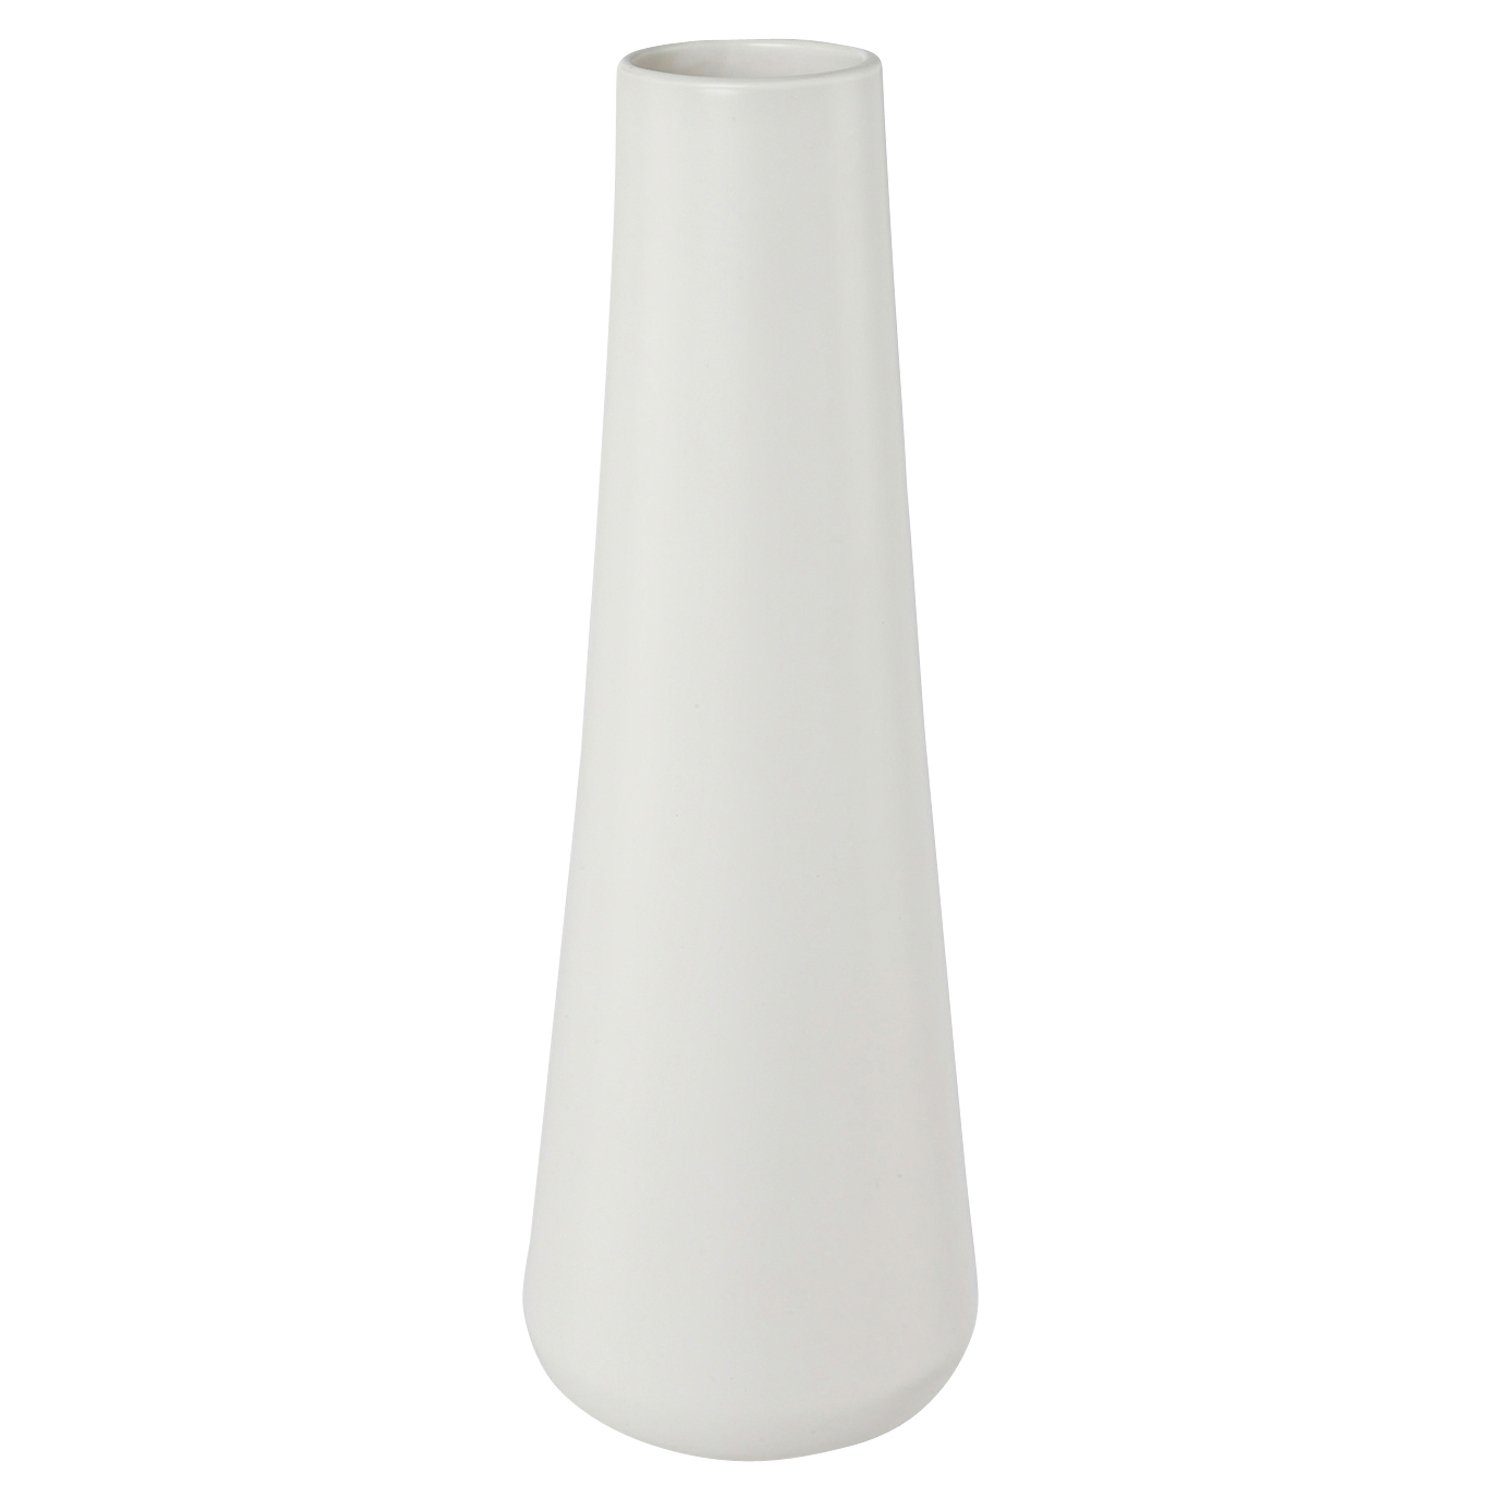 St) Vase, Dekovase H Weiß, cm BILBAO, Porzellan, Gasper (1 37